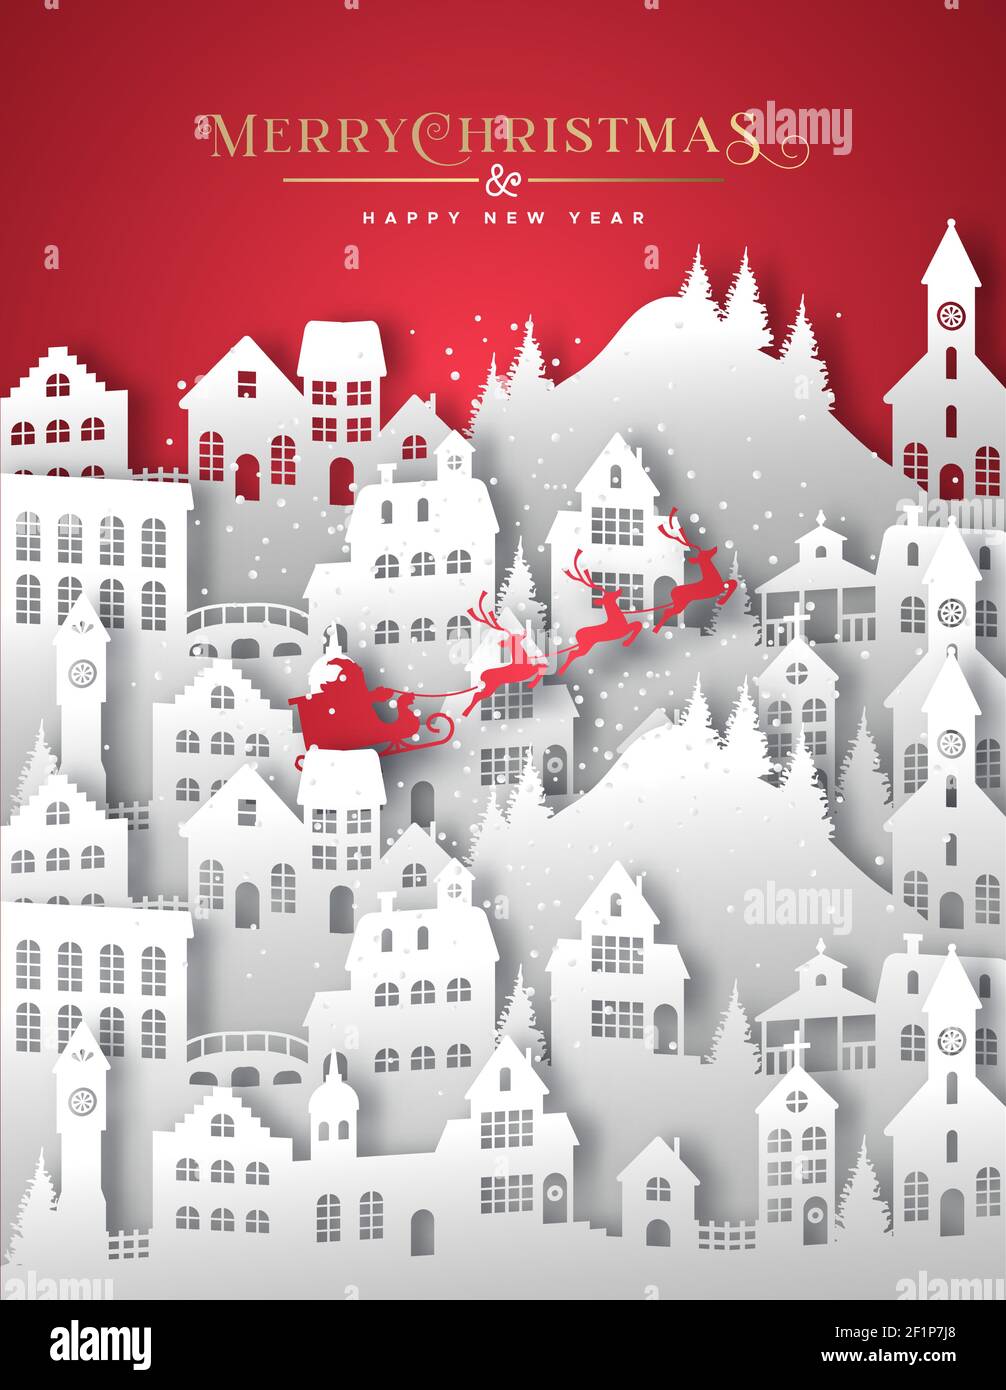 Frohe Weihnachten Happy New Year Grußkarte Illustration der weißen Winter Weihnachten Dorf in geschichteten 3D papercut Stil. Papierhandwerk Stadtlandschaft mit s Stock Vektor